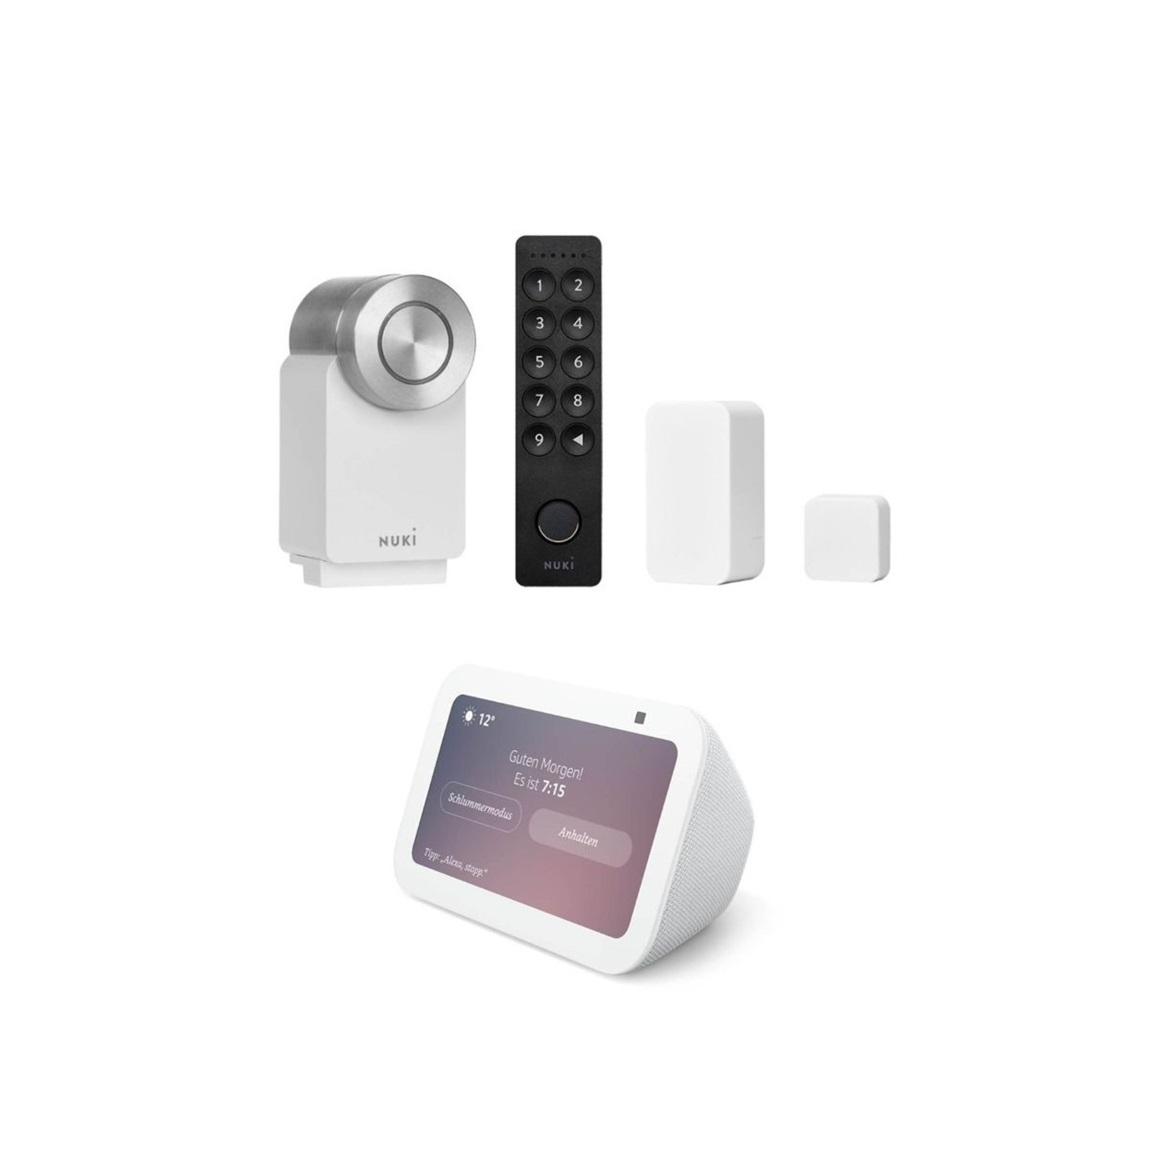 Nuki Smart Lock Pro (4. Gen) + Keypad 2.0 + Door Sensor + Amazon Echo Show 5 (3. Gen) – Deal, Schnäppchen, sparen